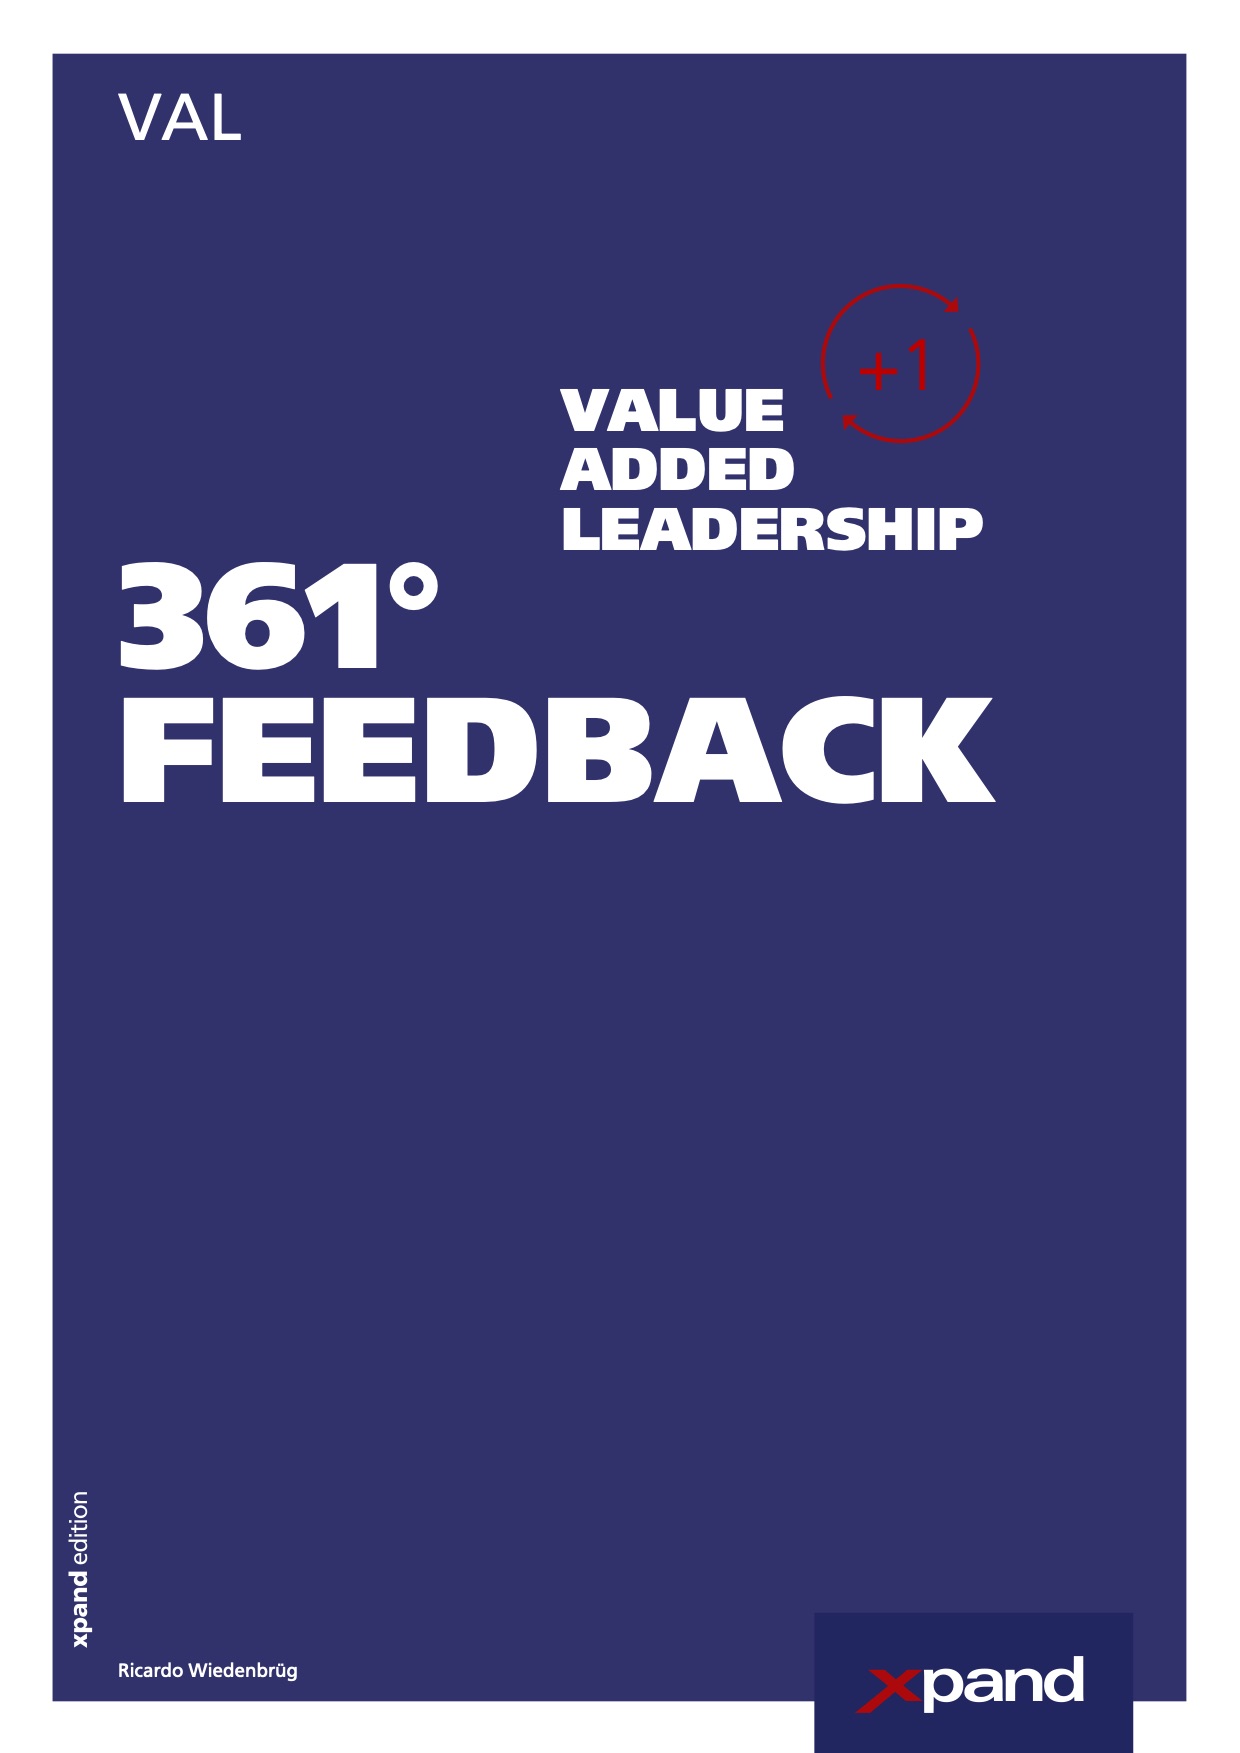 Online VAL 361° FEEDBACK-SCAN für Führungskräfte